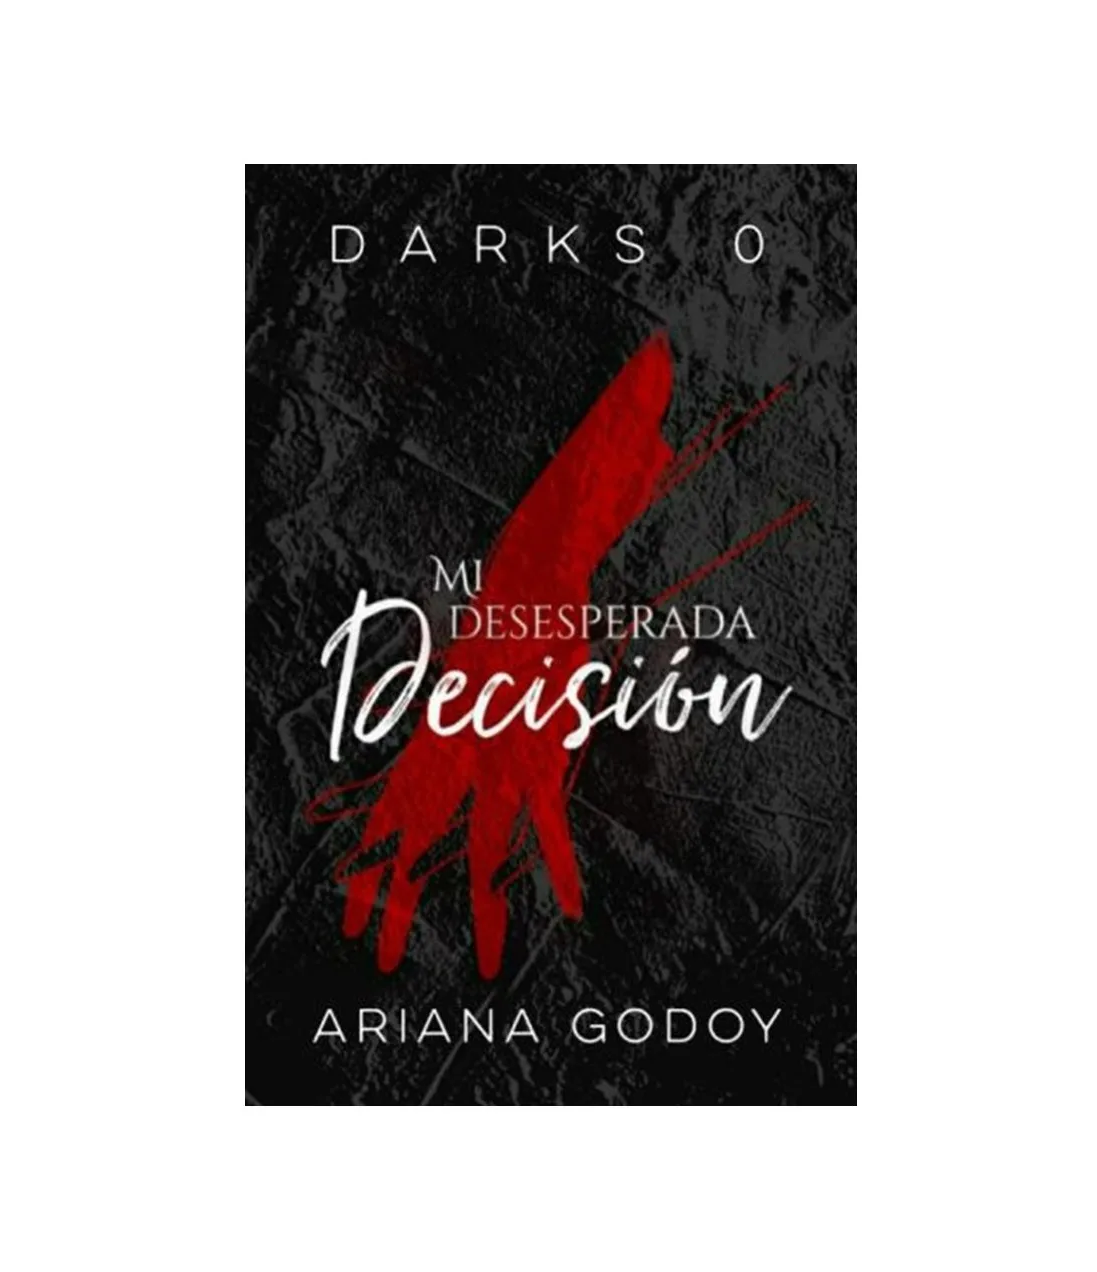 Mi desesperada decisión (Darks #0) by Ariana Godoy